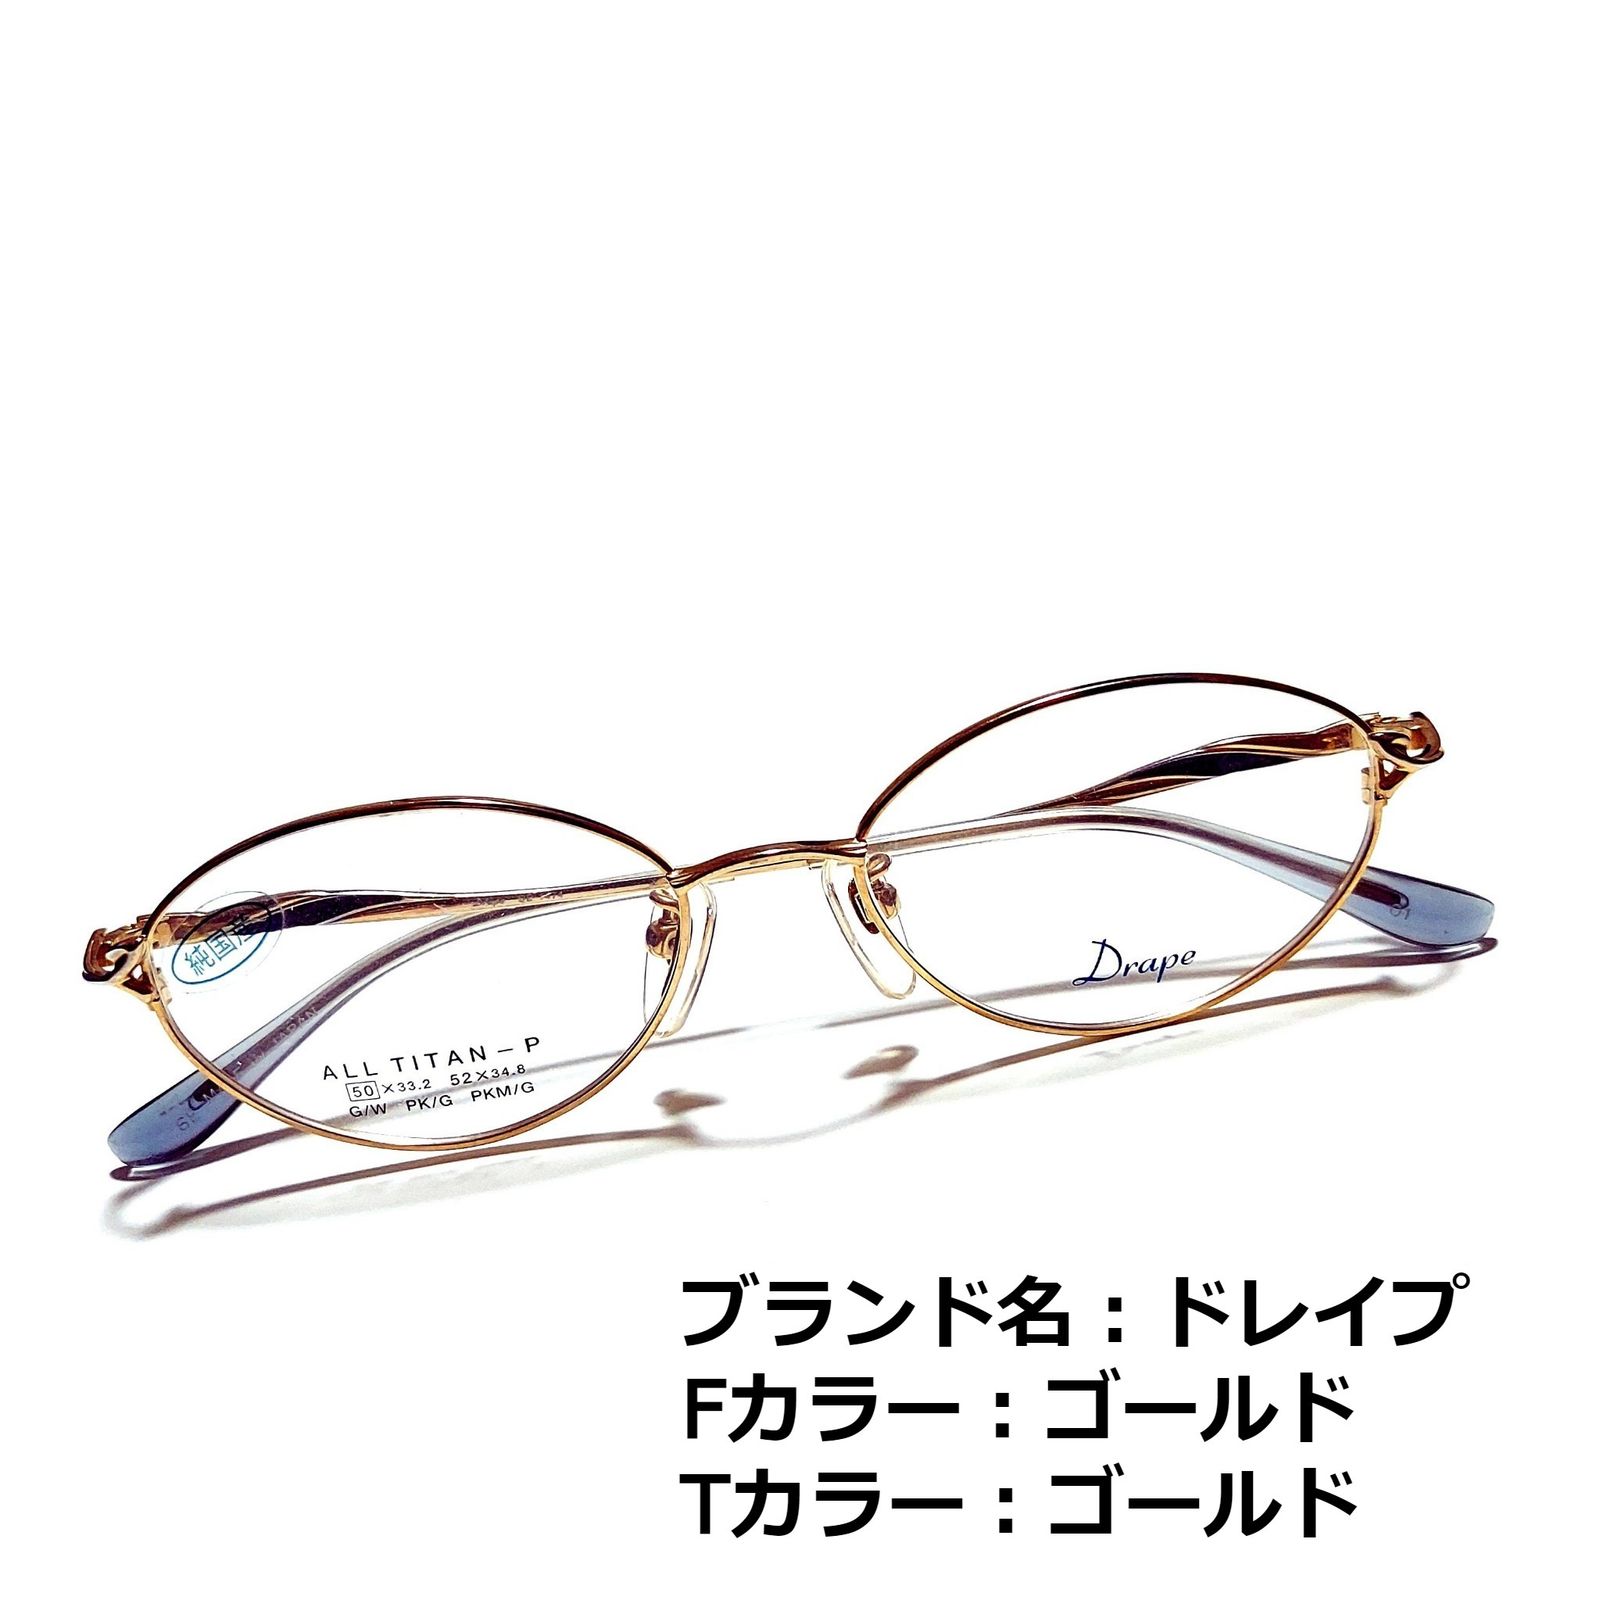 価値 No.1542+メガネ MORPHEE【度数入り込み価格】 | www.artfive.co.jp